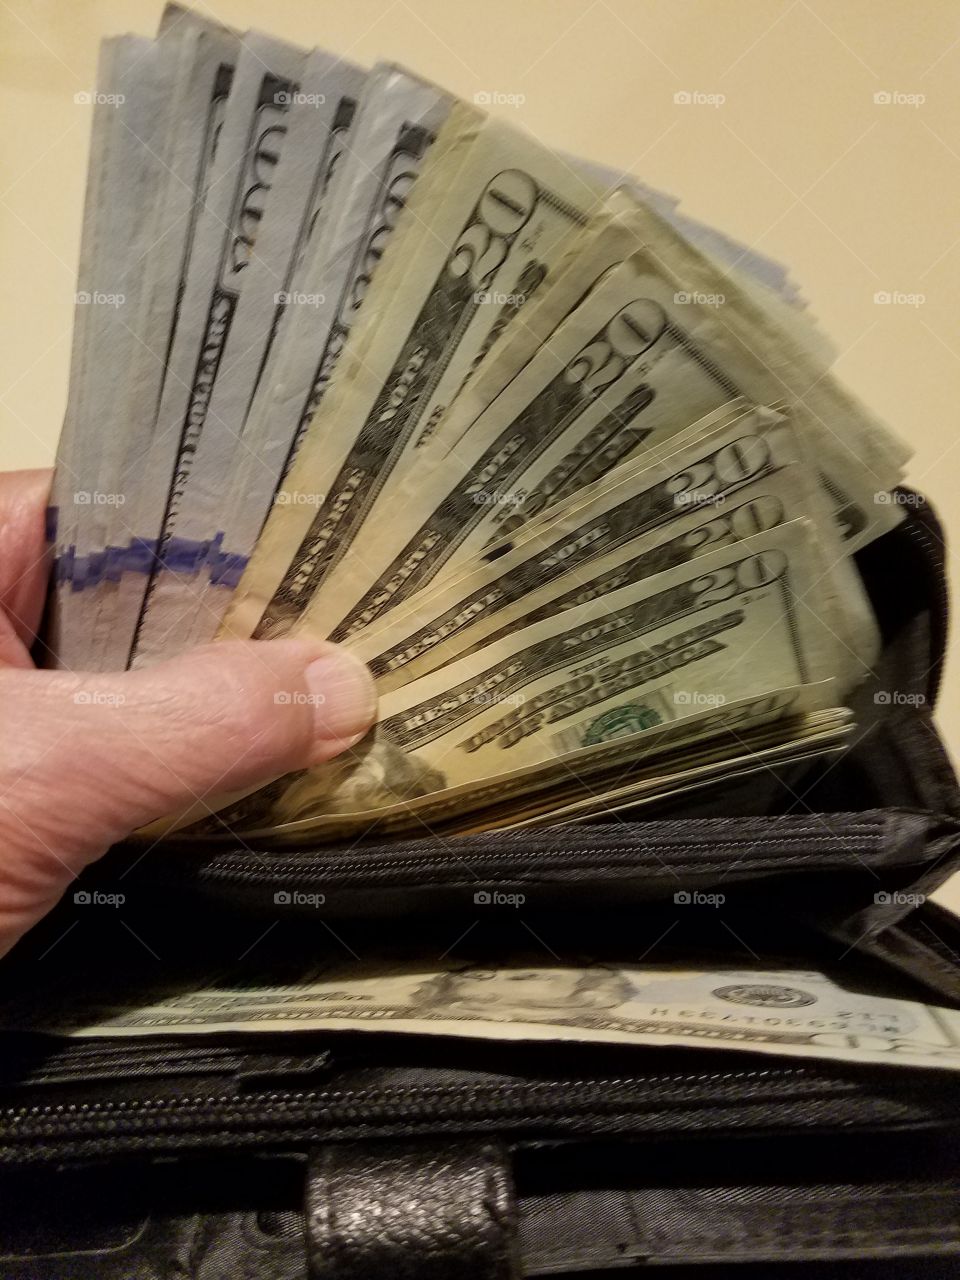 Cash in $20 & $100 dollar bills held in hand.